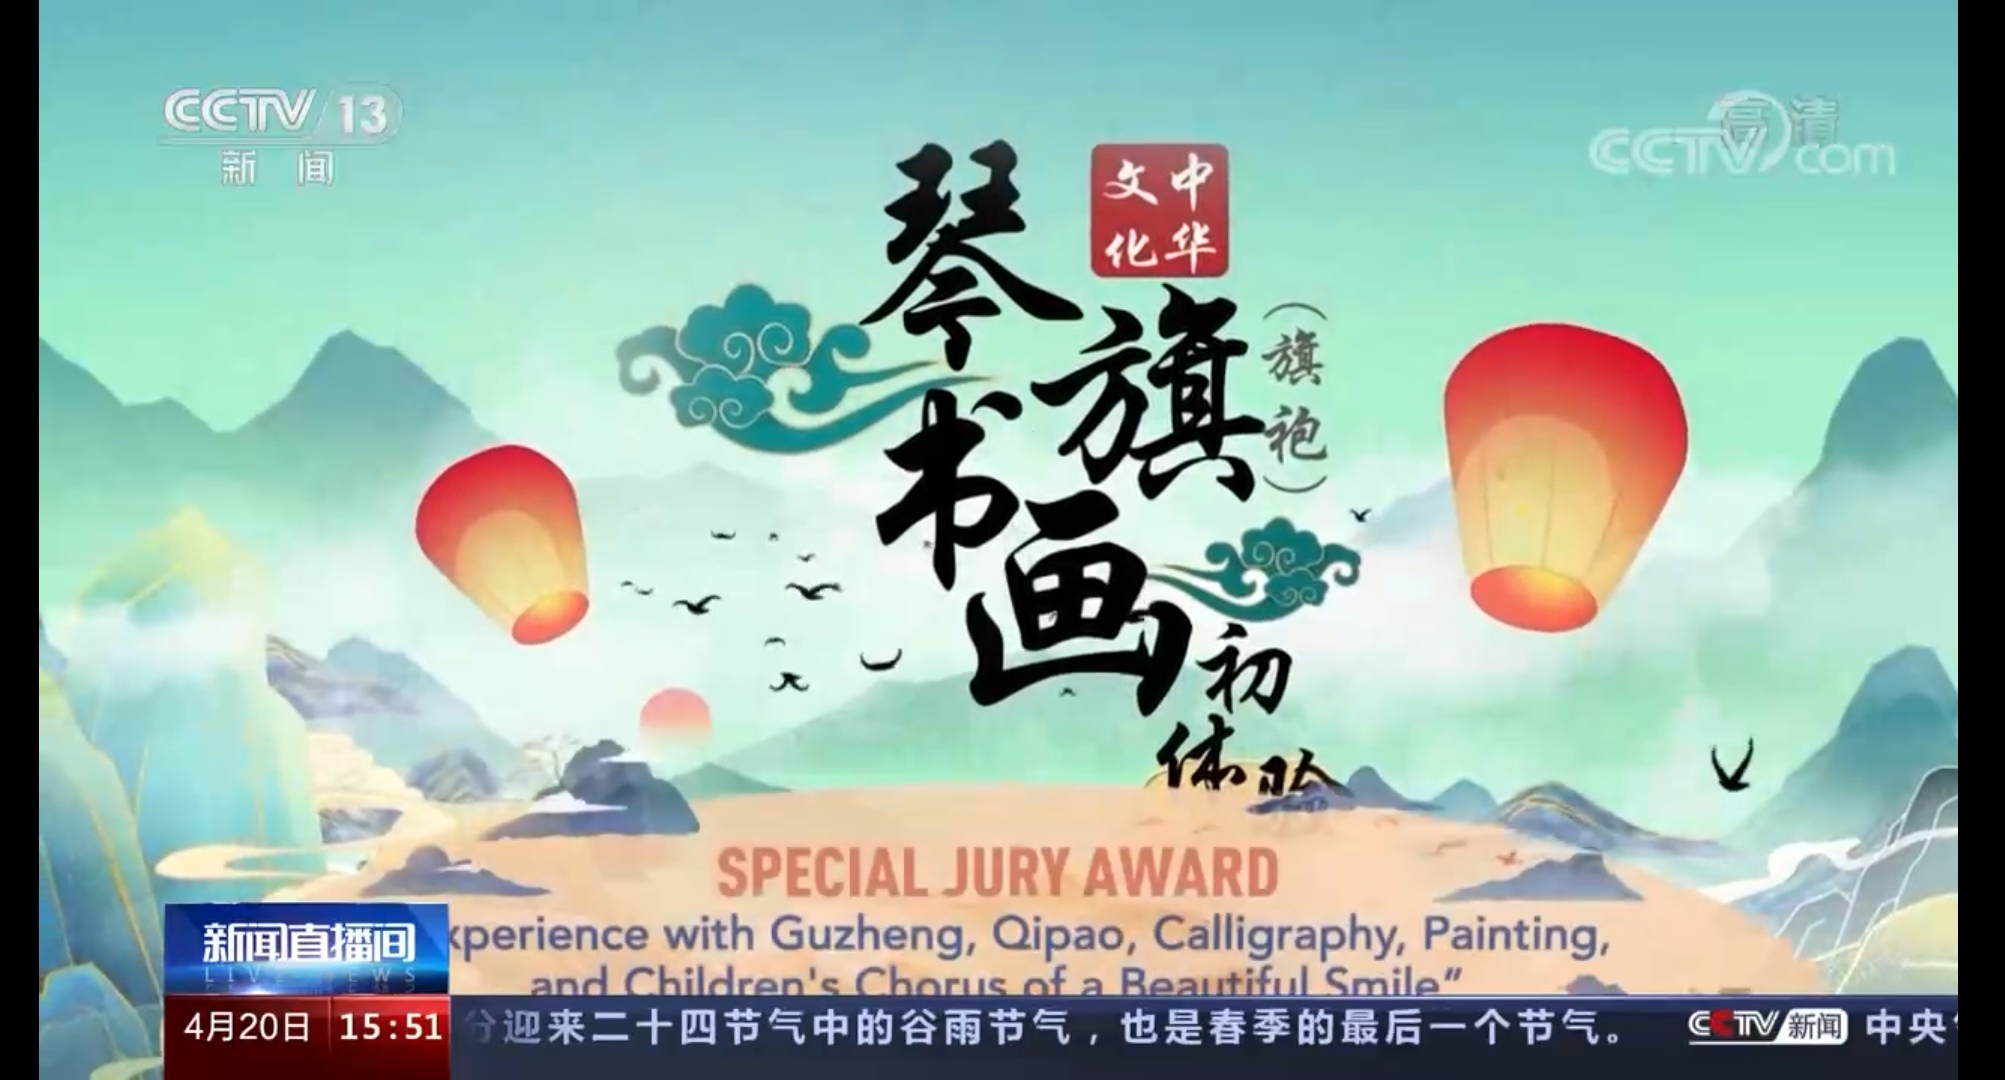 图1-荣获“评委会特别奖”(Special Jury Award).jpg